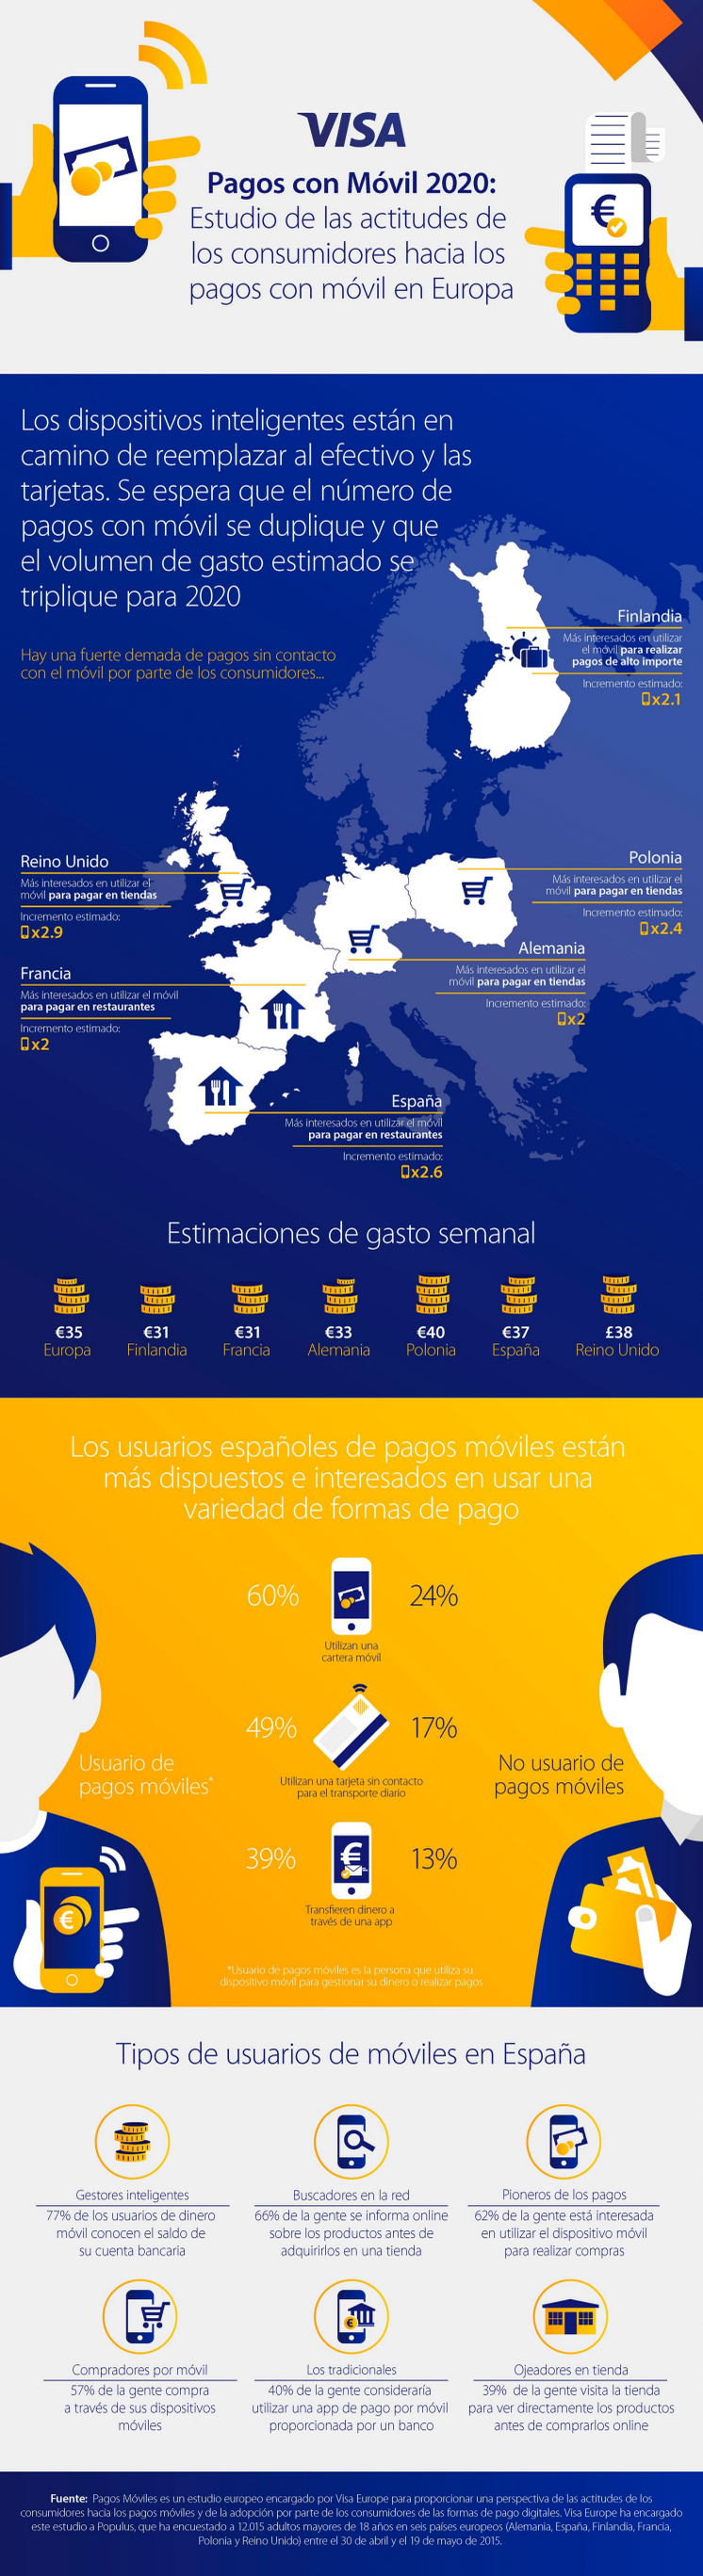 infografía - Encuesta Visa Europe Pagos Móviles 2015